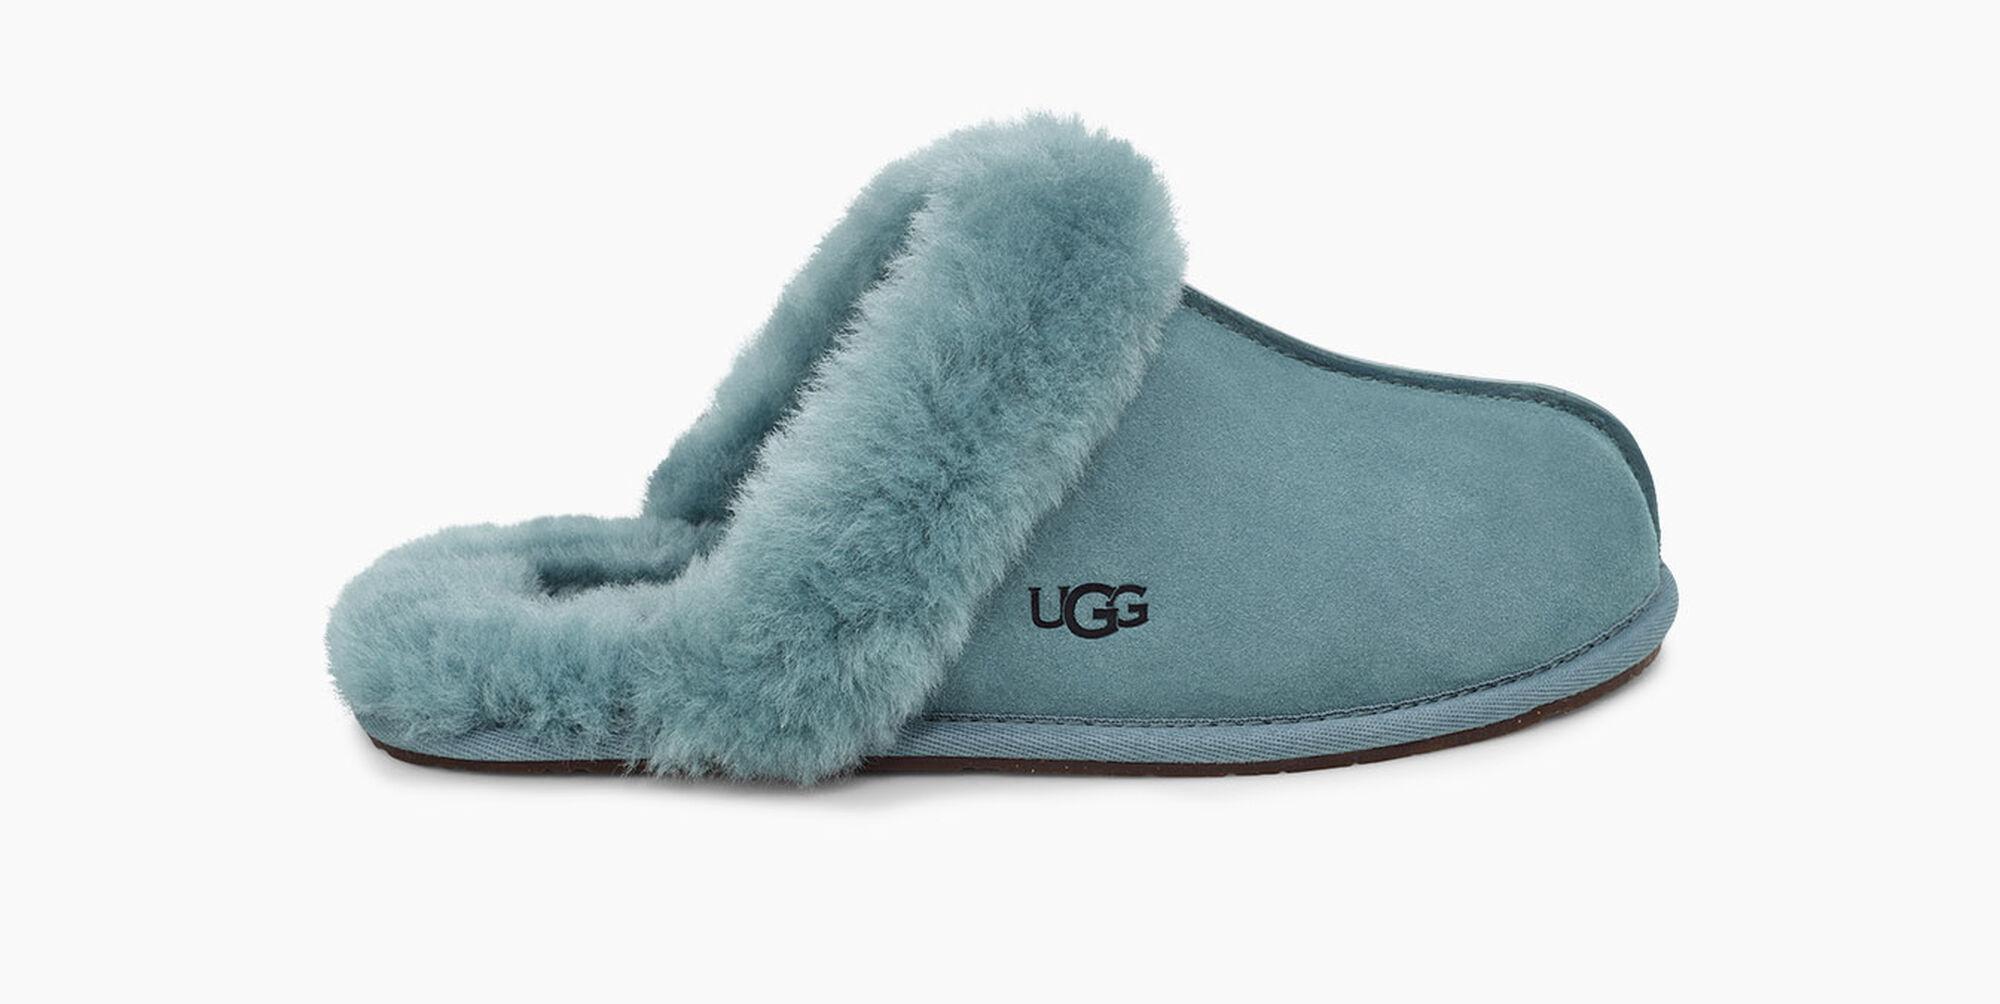 السبب كرتون شعار ugg teal slippers 